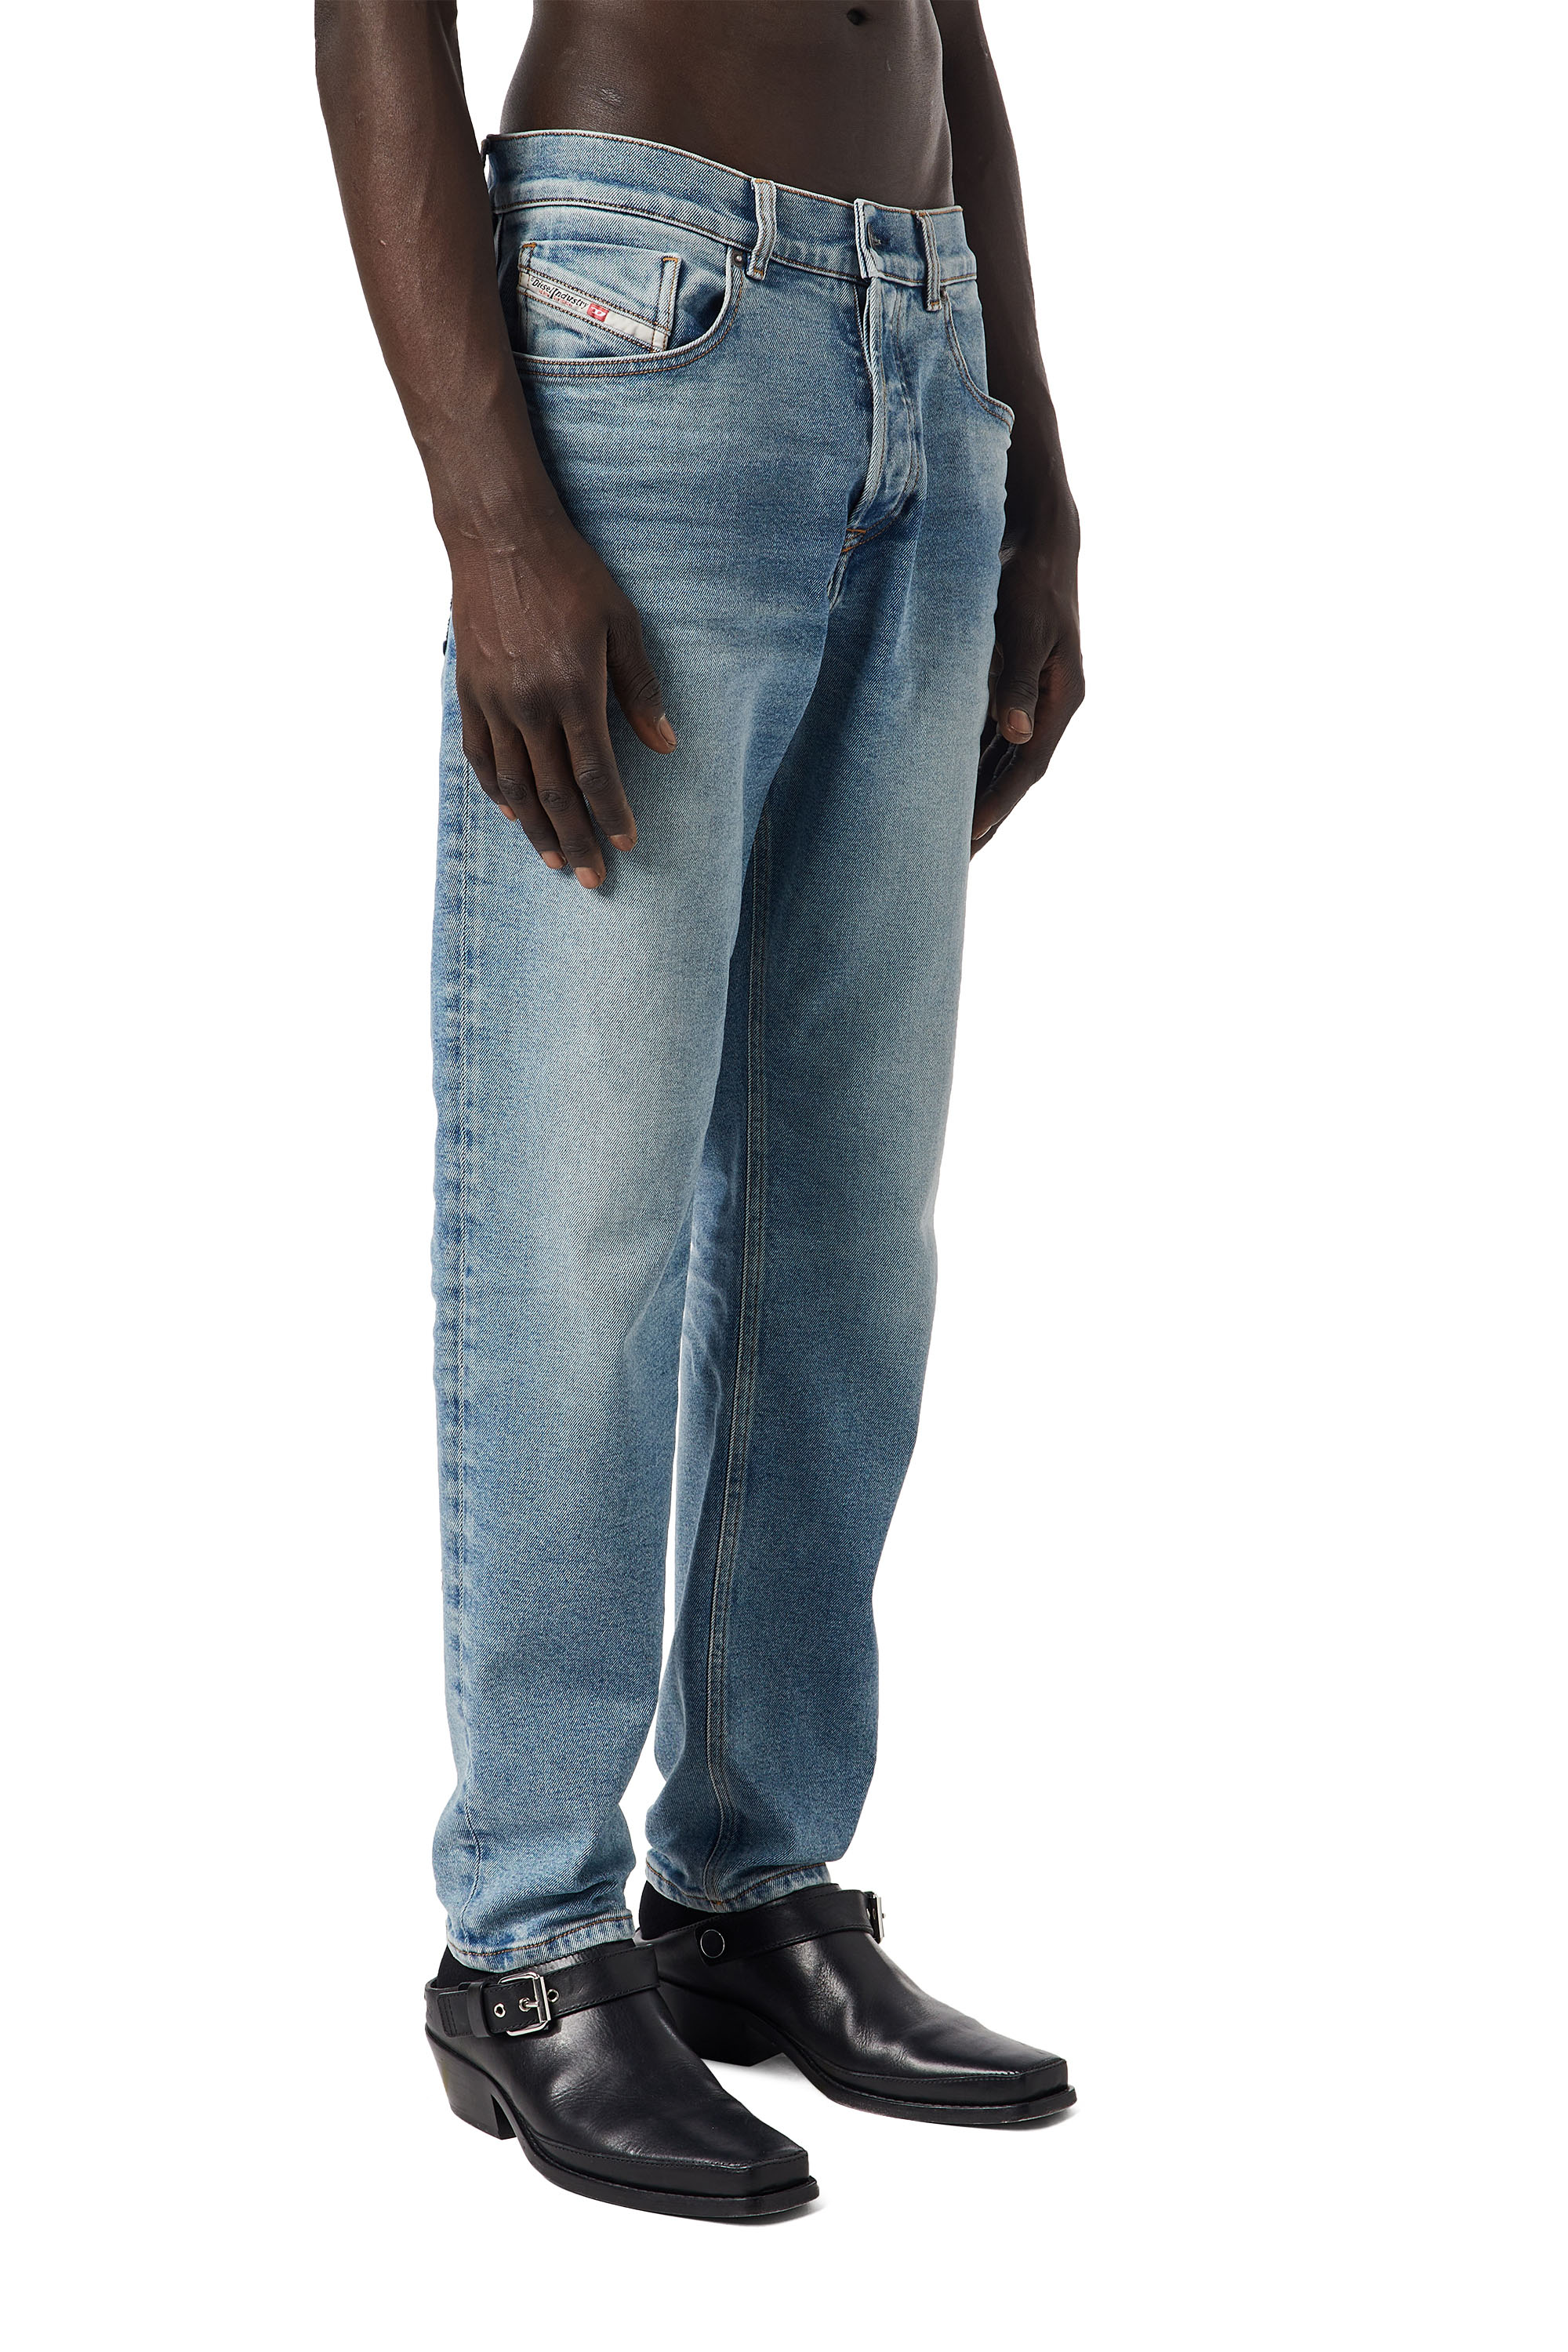 Super skinny fit jeans herren - Unser TOP-Favorit 